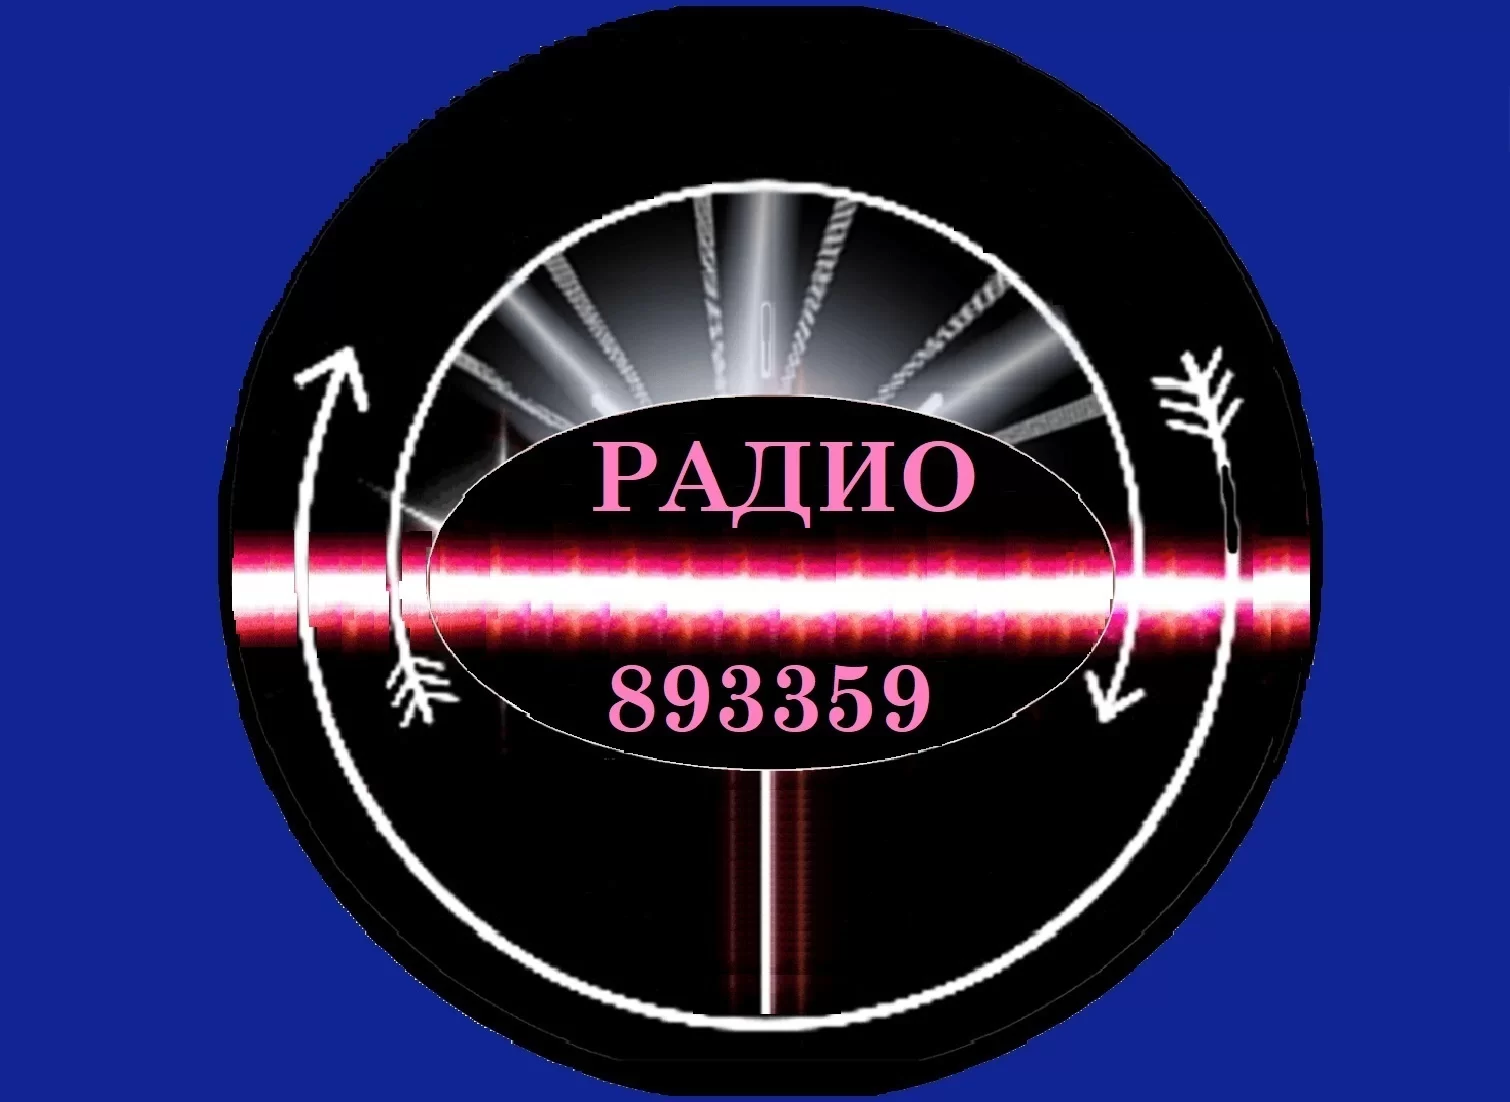 Радио 893359